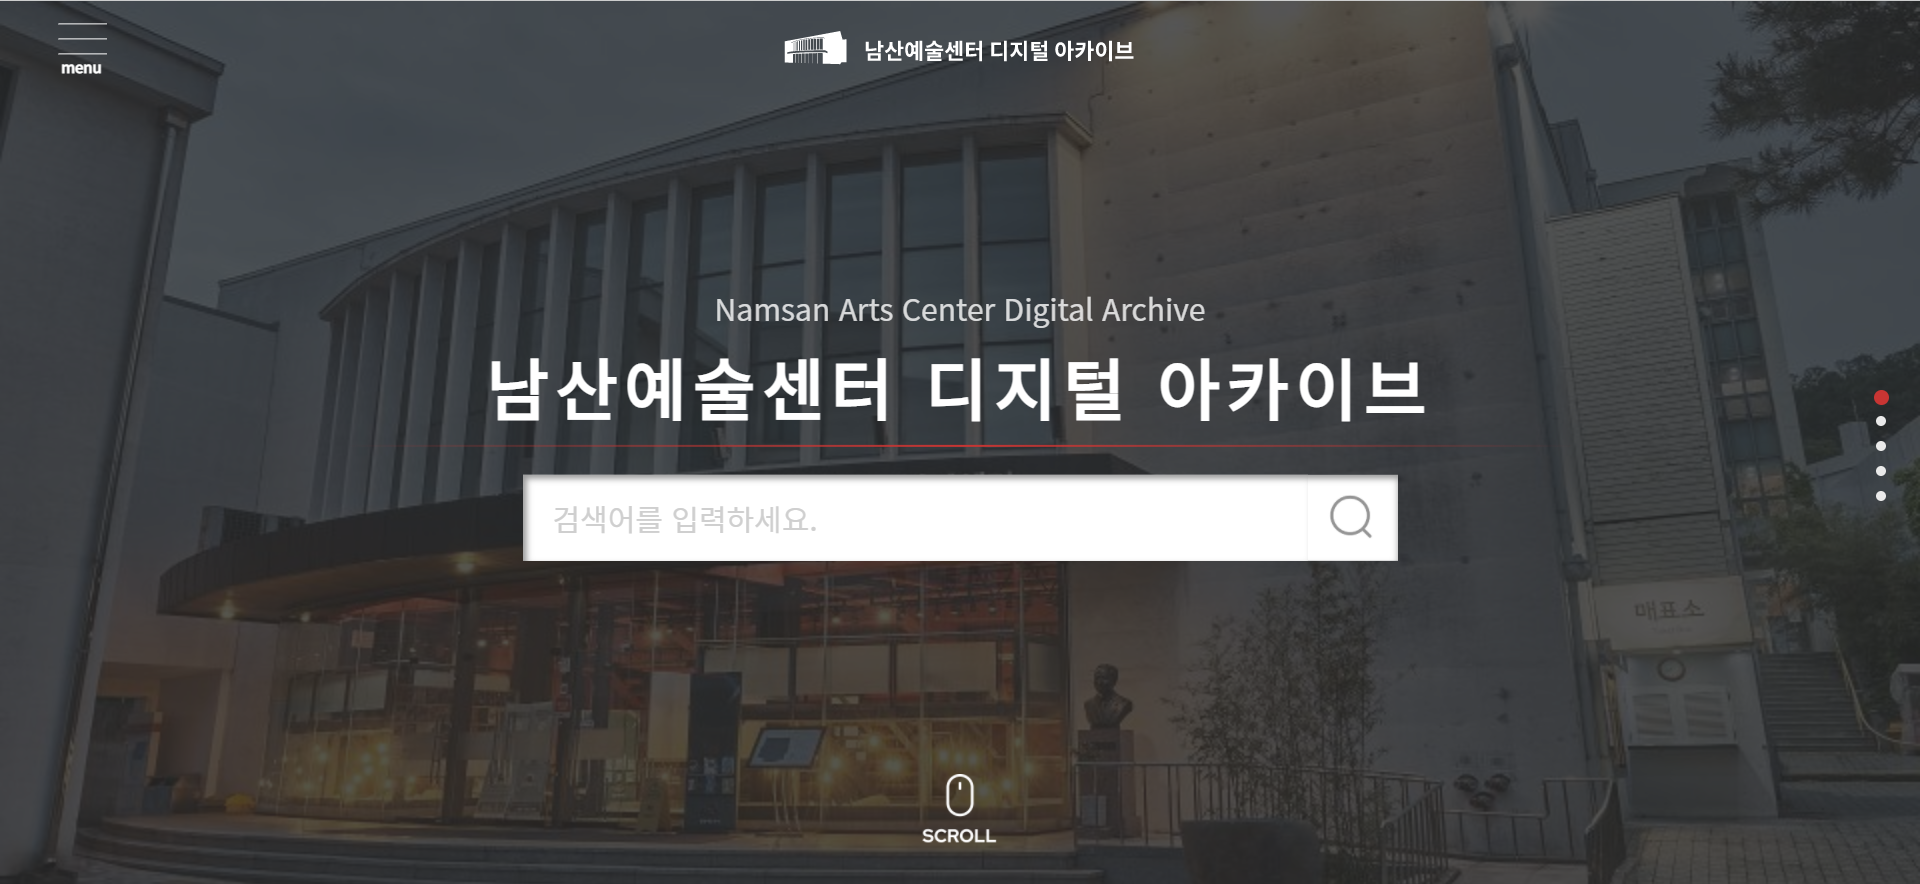 남산예술센터 디지털 아카이브 1.png